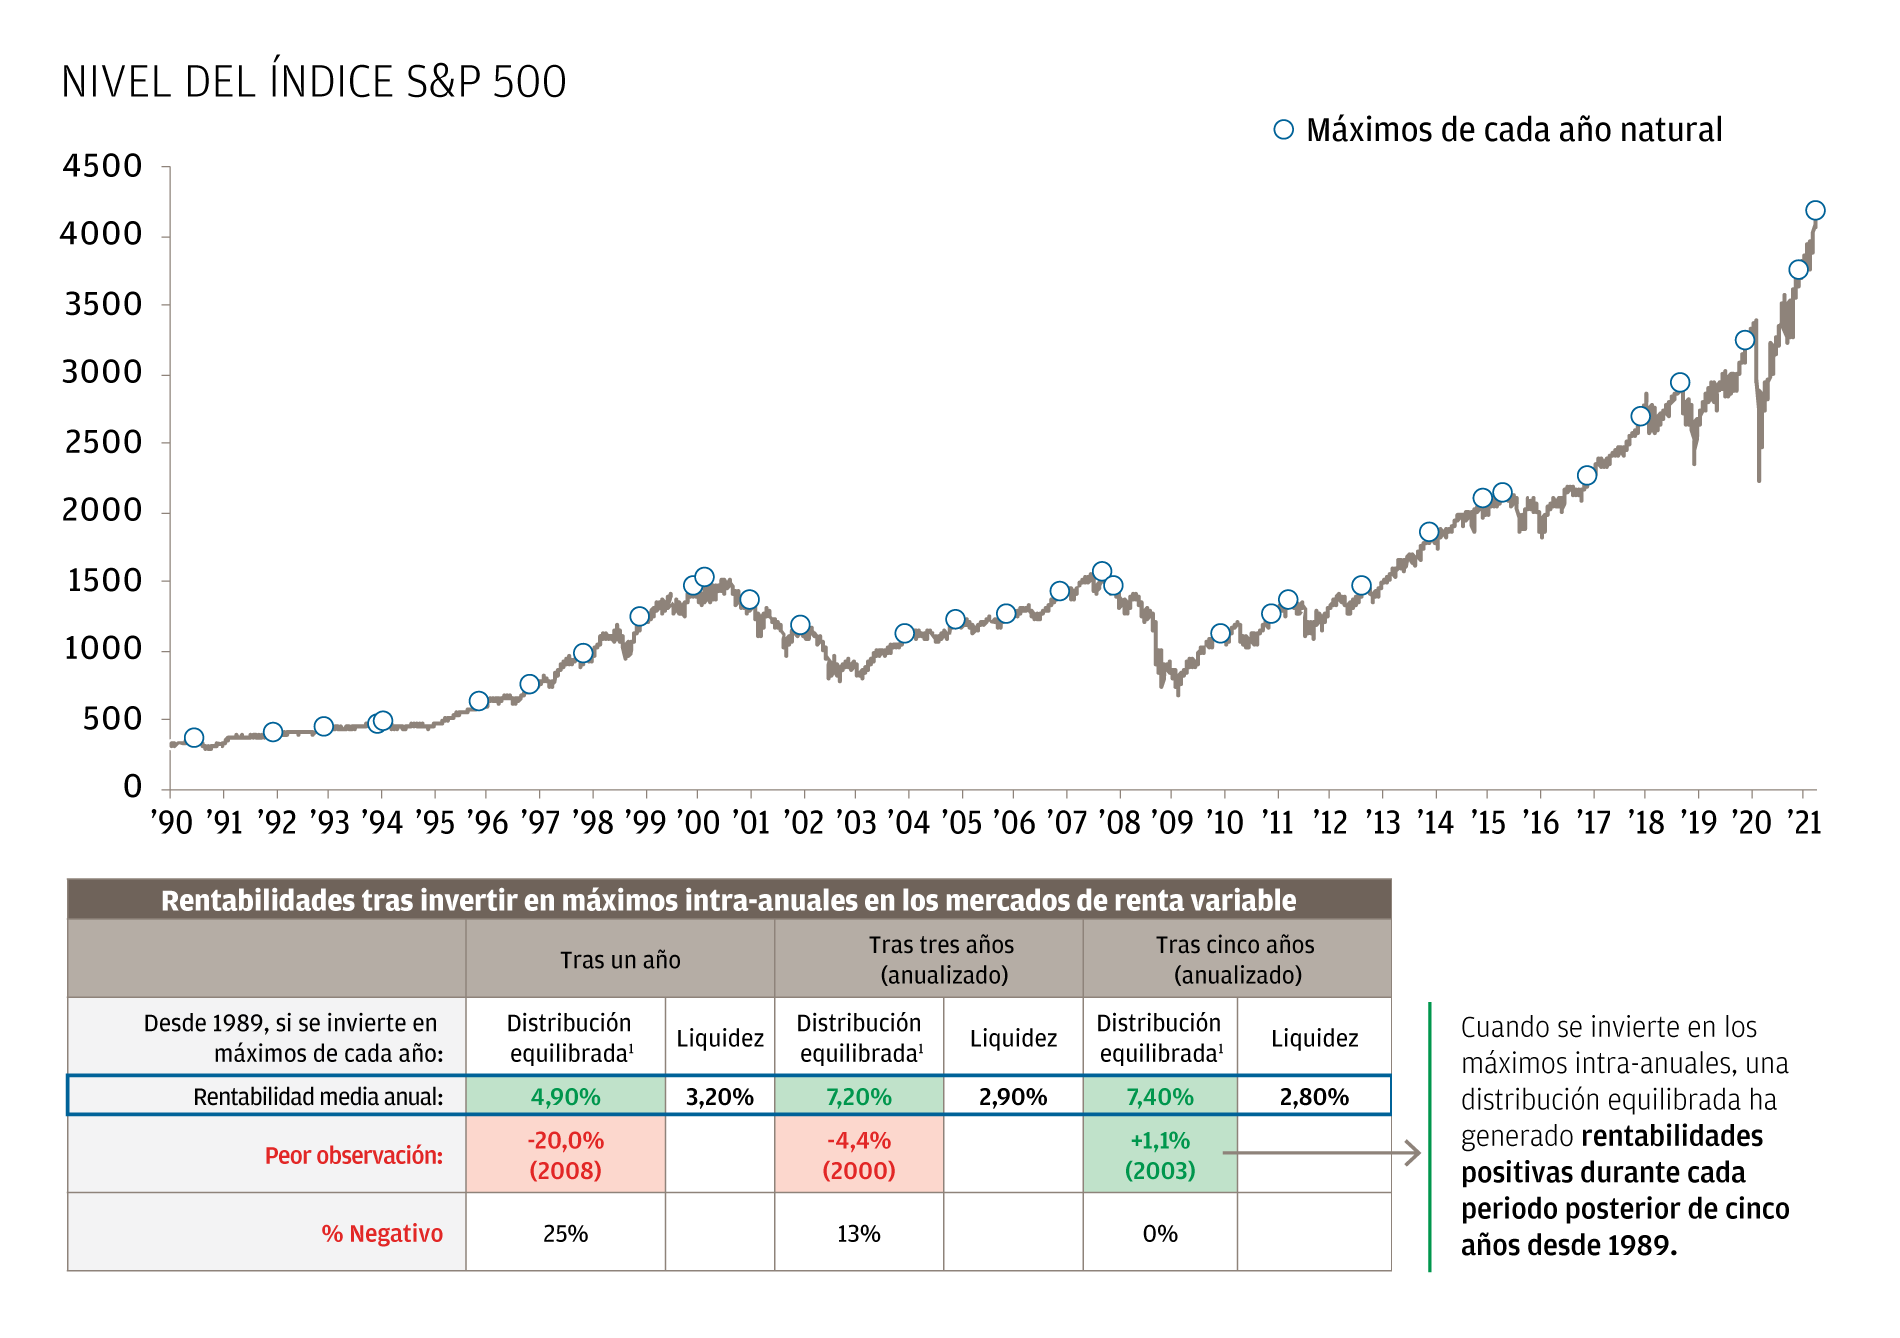 El gráfico lineal muestra las rentabilidades tras invertir a los máximos intra-anuales de 1989 a 2021. El S&P 500 ha subido con el transcurso del tiempo. El gráfico presenta asimismo una tabla que muestra que un inversor que puso su dinero a trabajar a los máximos intra-anuales del mercado de renta variable generó una rentabilidad anualizado del 7,4% en un horizonte temporal a cinco años a partir de una distribución equilibrada (que asume una distribución del 55% al S&P 500 y una distribución del 45% al Bloomberg Barclays U.S. Aggregate index, reequilibrada trimestralmente), frente a una rentabilidad anualizada del 2,8% en un horizonte temporal de cinco años de una inversión en liquidez. Es de señalar que, al invertir a los máximos intra-anuales, la distribución equilibrada ha generado rentabilidades positivas durante cada periodo posterior de cinco años desde 1989 (es decir, la rentabilidad anualizada nunca ha sido negativa en ese horizonte temporal). 